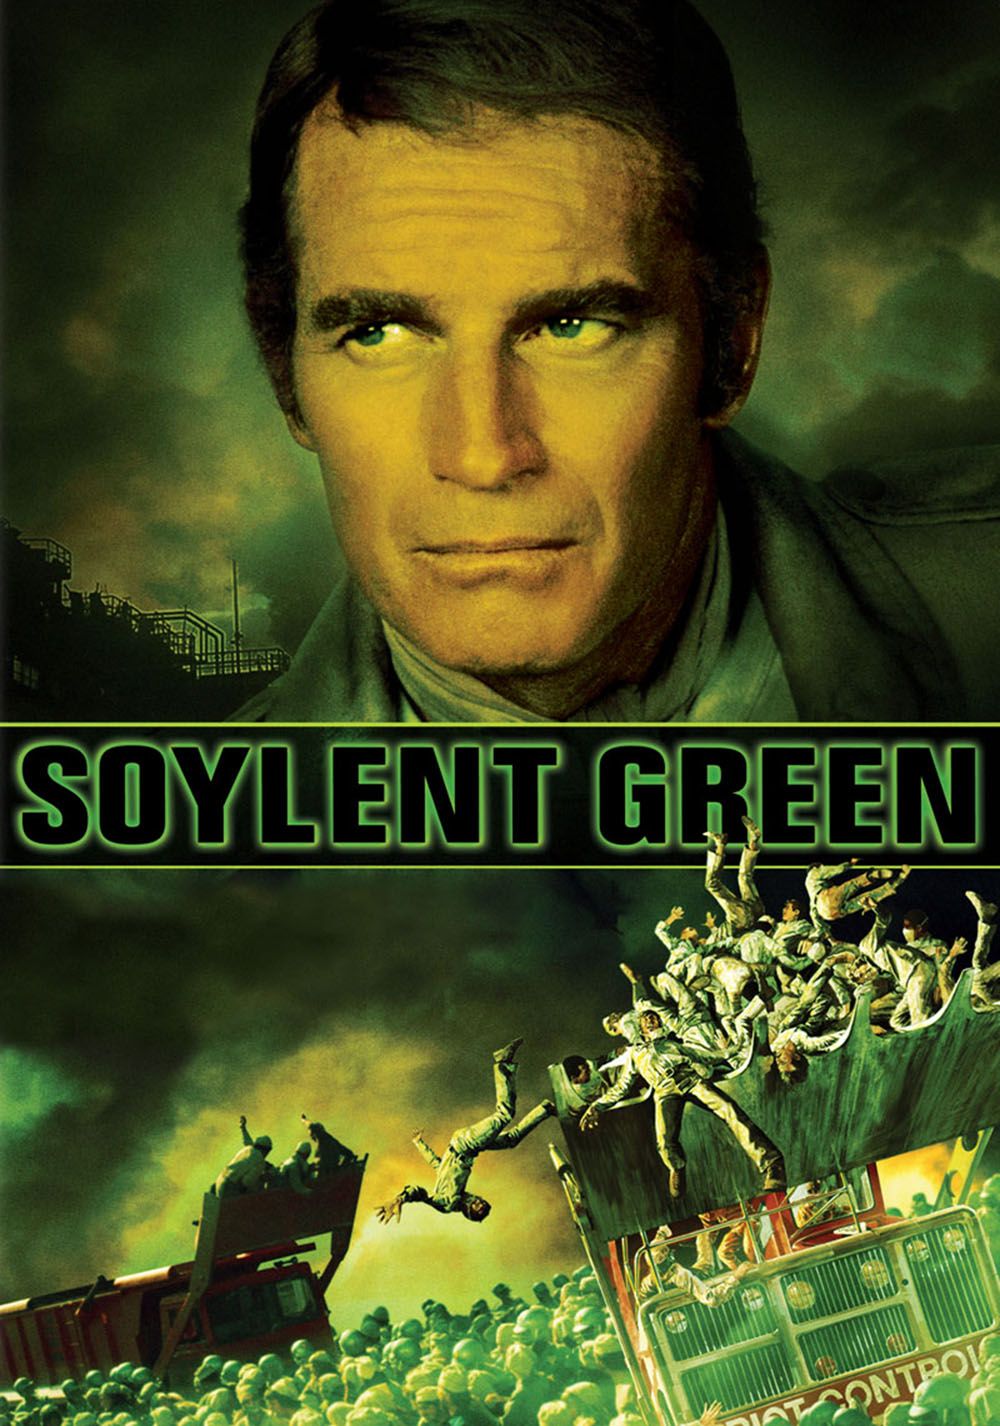 Affiches, posters et images de Soleil vert (1973) - SensCritique